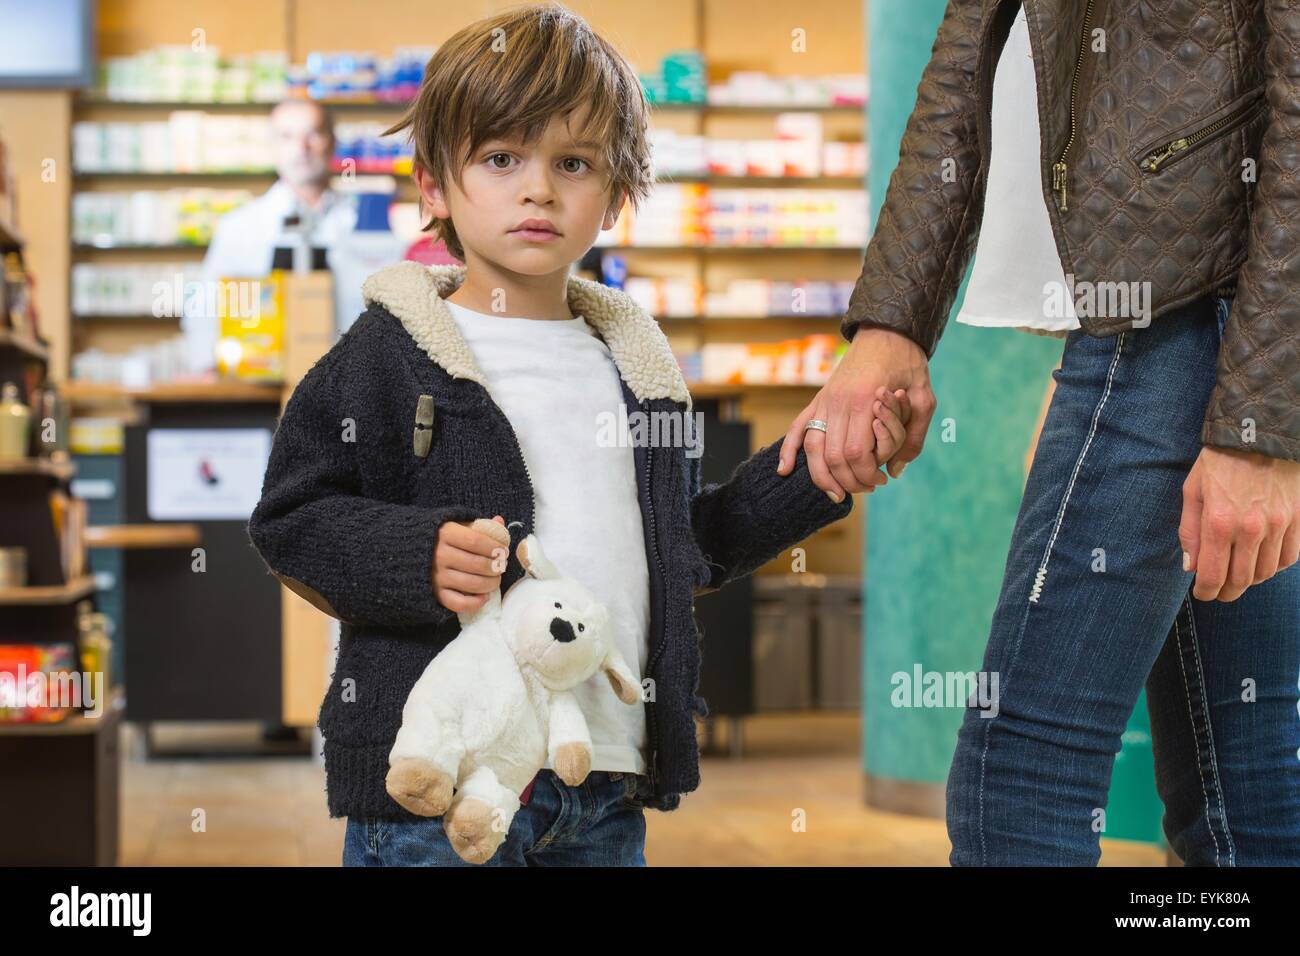 Junge und seine Mutter ist auf der Suche nach medizinischer Behandlung in einer Apotheke Stockfoto